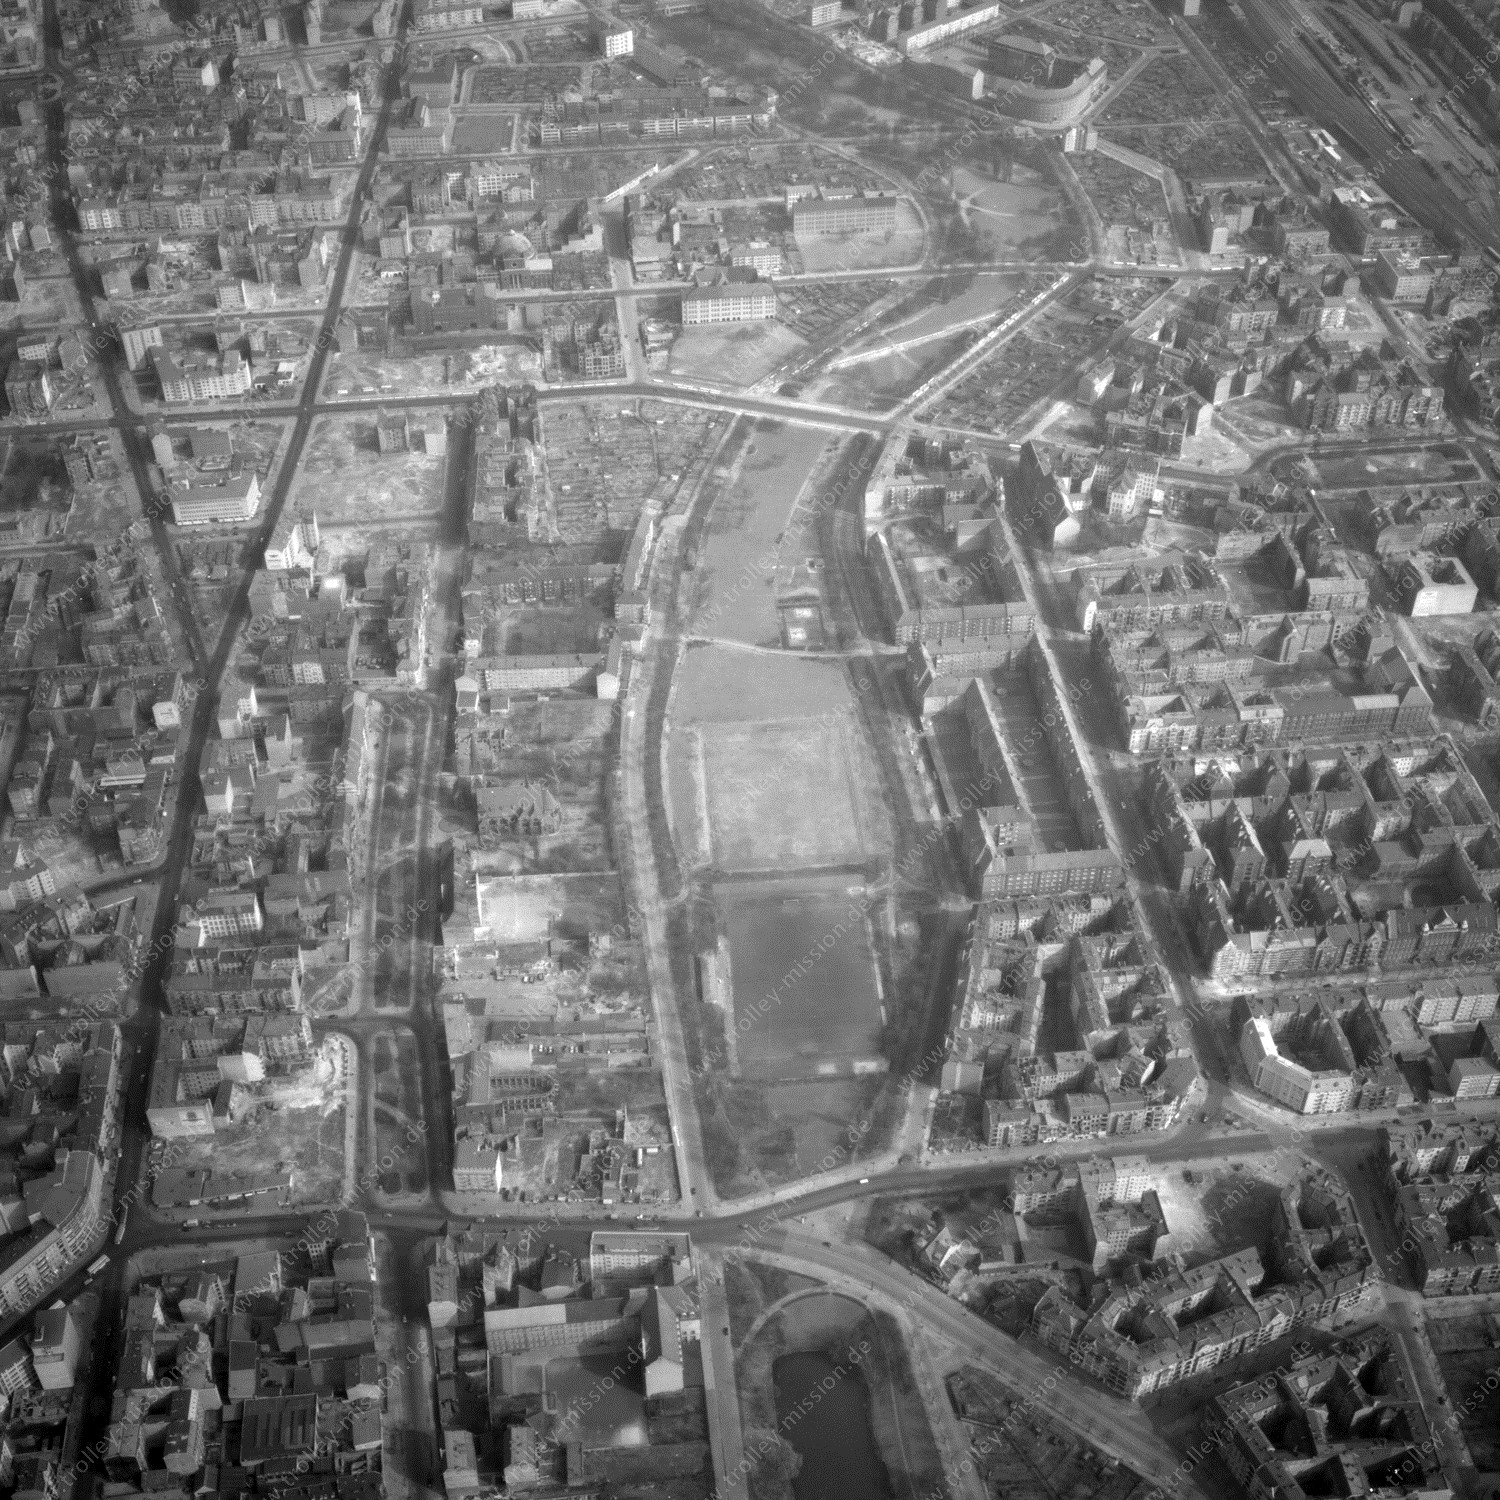 Alte Fotos und Luftbilder von Berlin - Luftbildaufnahme Nr. 01 - Historische Luftaufnahmen von West-Berlin aus dem Jahr 1954 - Flugstrecke Delta